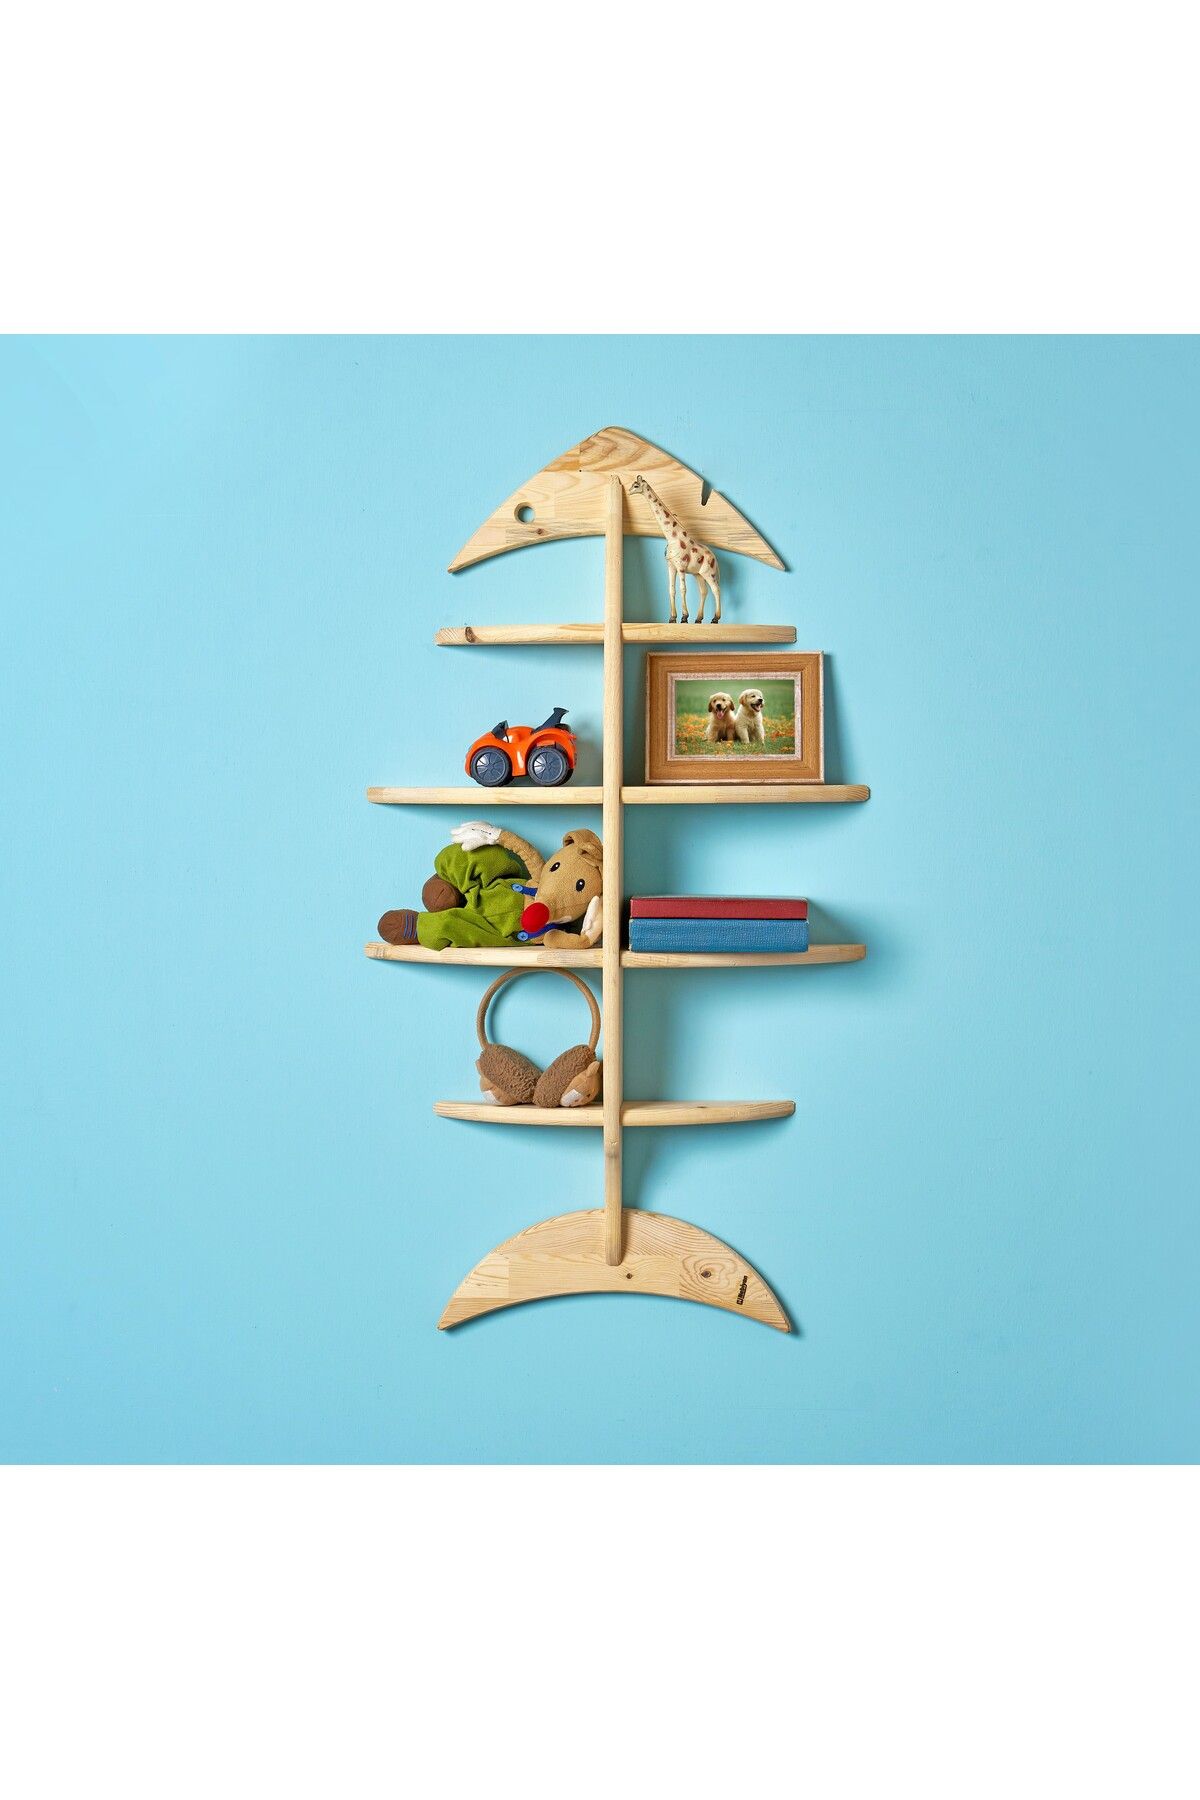 Nebiyan Balık Kılçığı Kitaplık / Raf - Çocuk Odası, Kafe ve Restoranlar İçin. Dikey ve Yatay Kullanılabilir